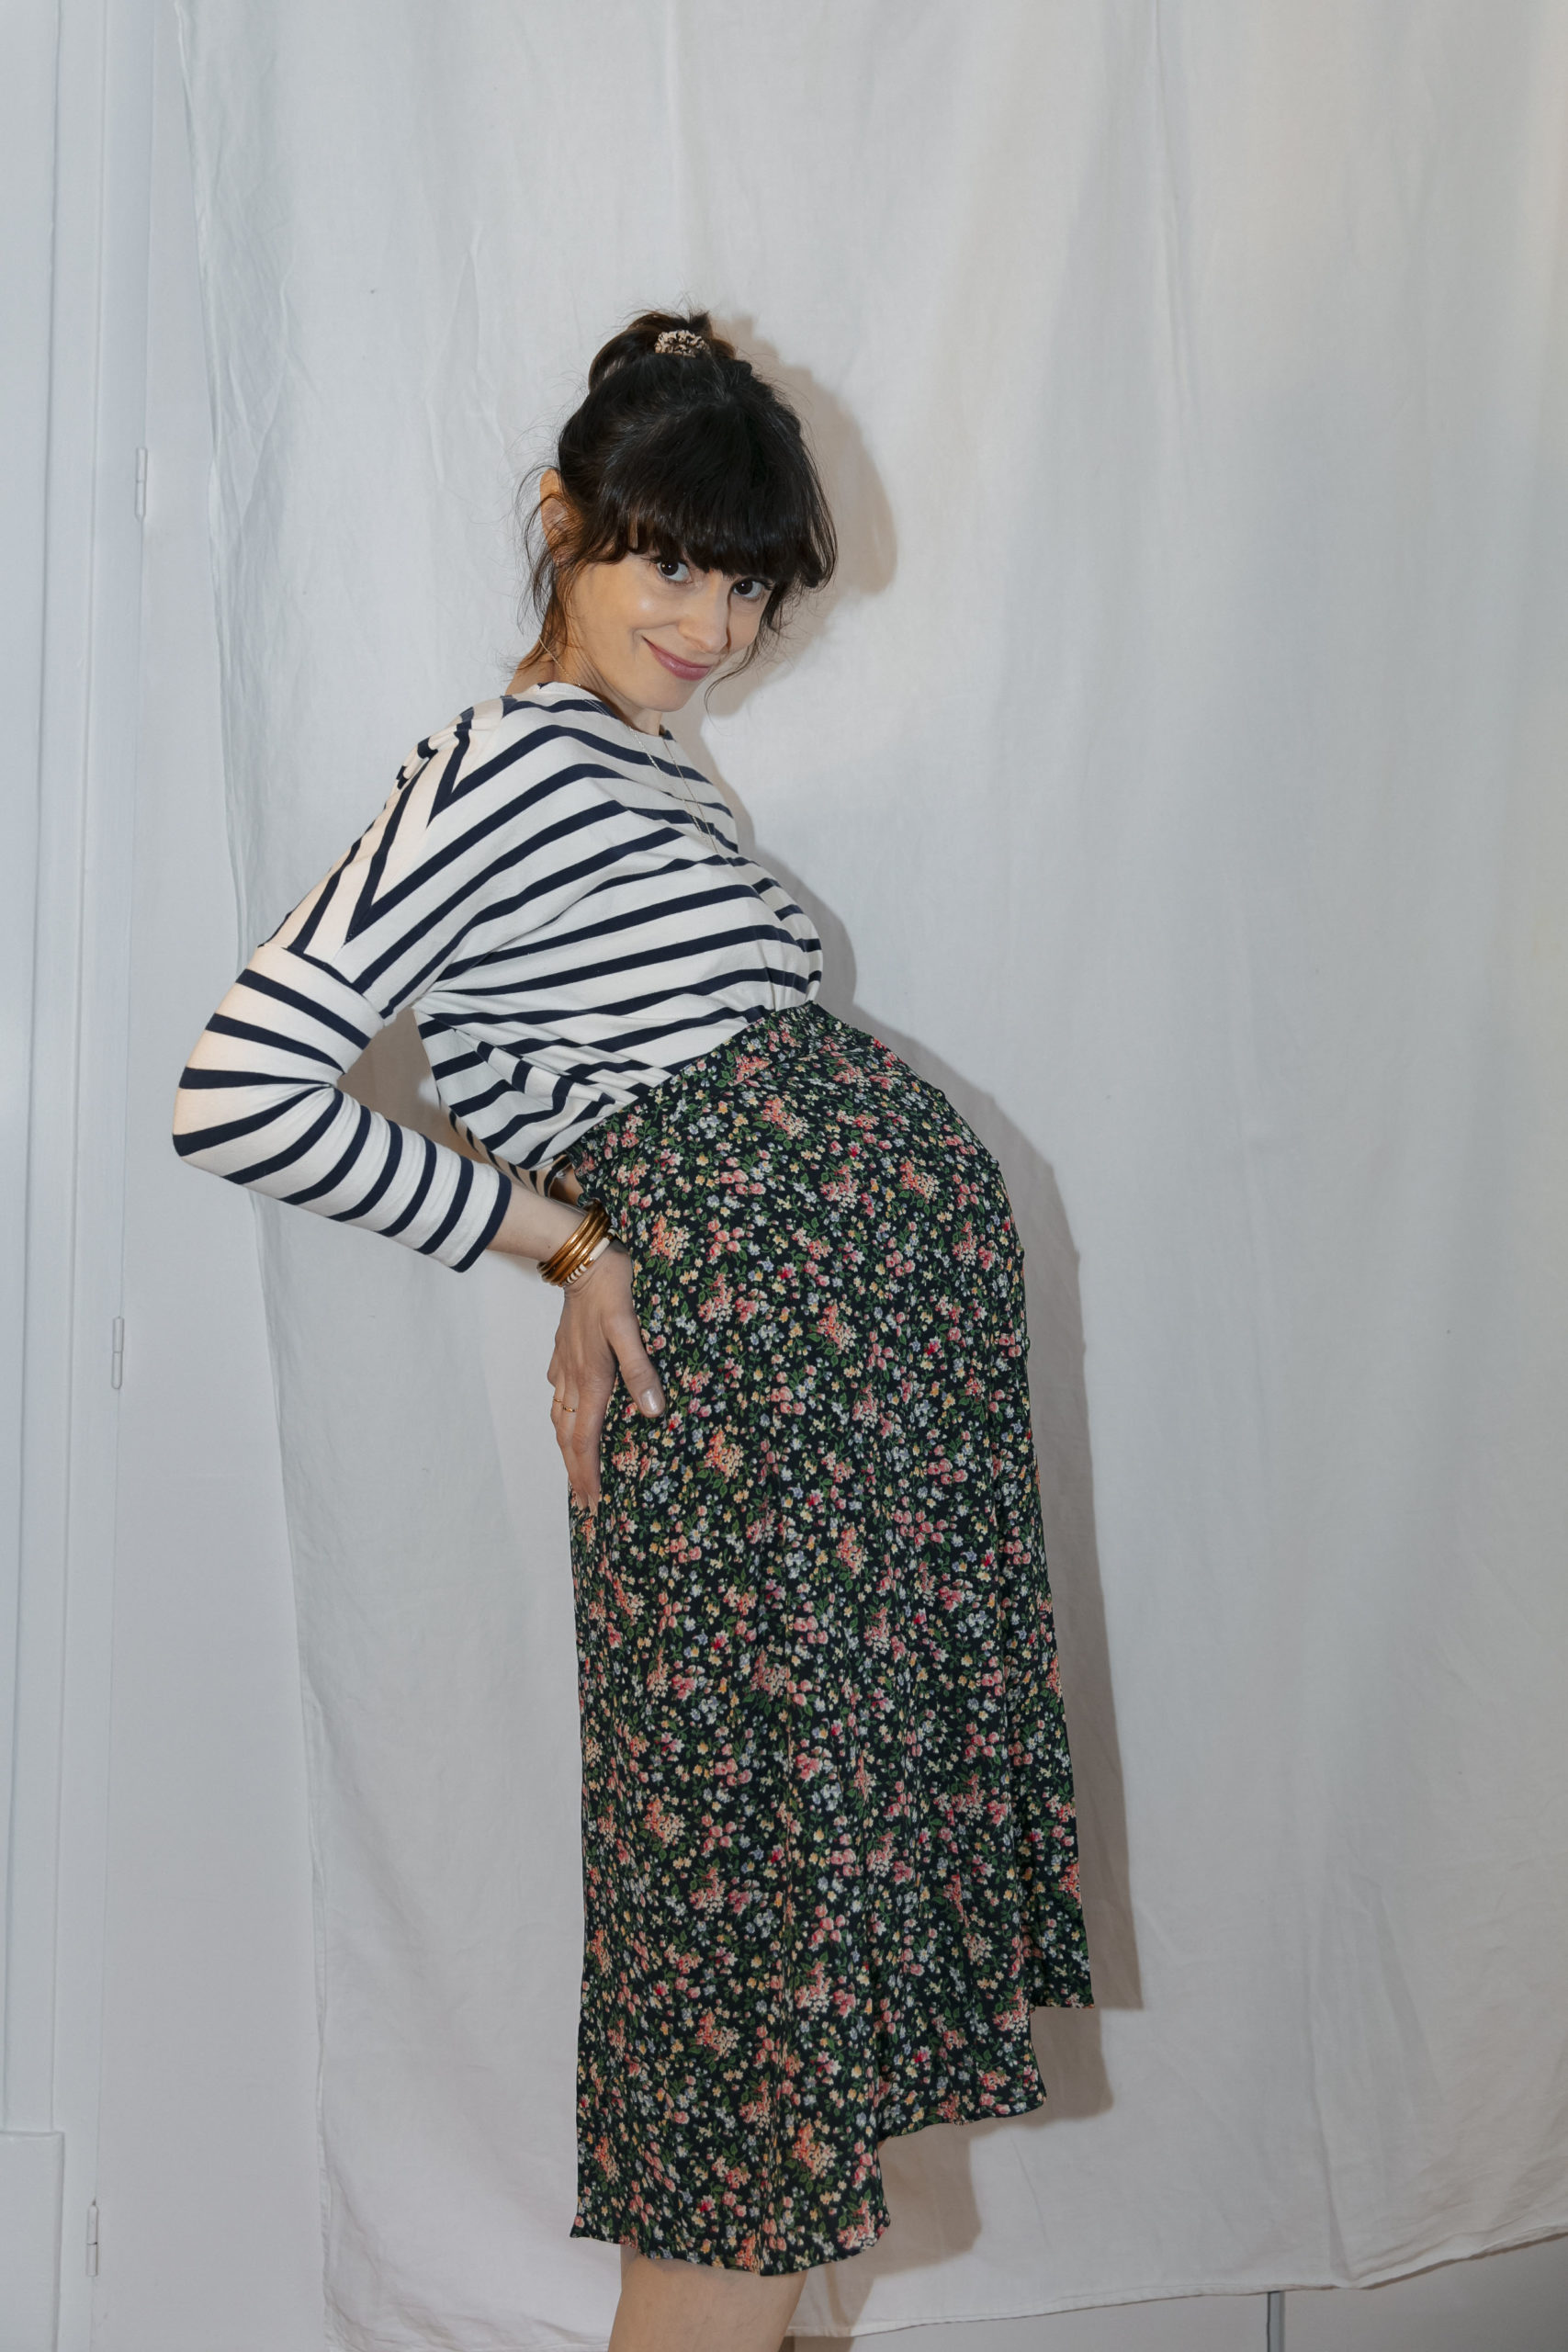 Comment s'habiller enceinte sans passer par les vêtements de maternité - Le  bazar d'Alison - Blog Lifestyle, Zéro Déchet et Kids